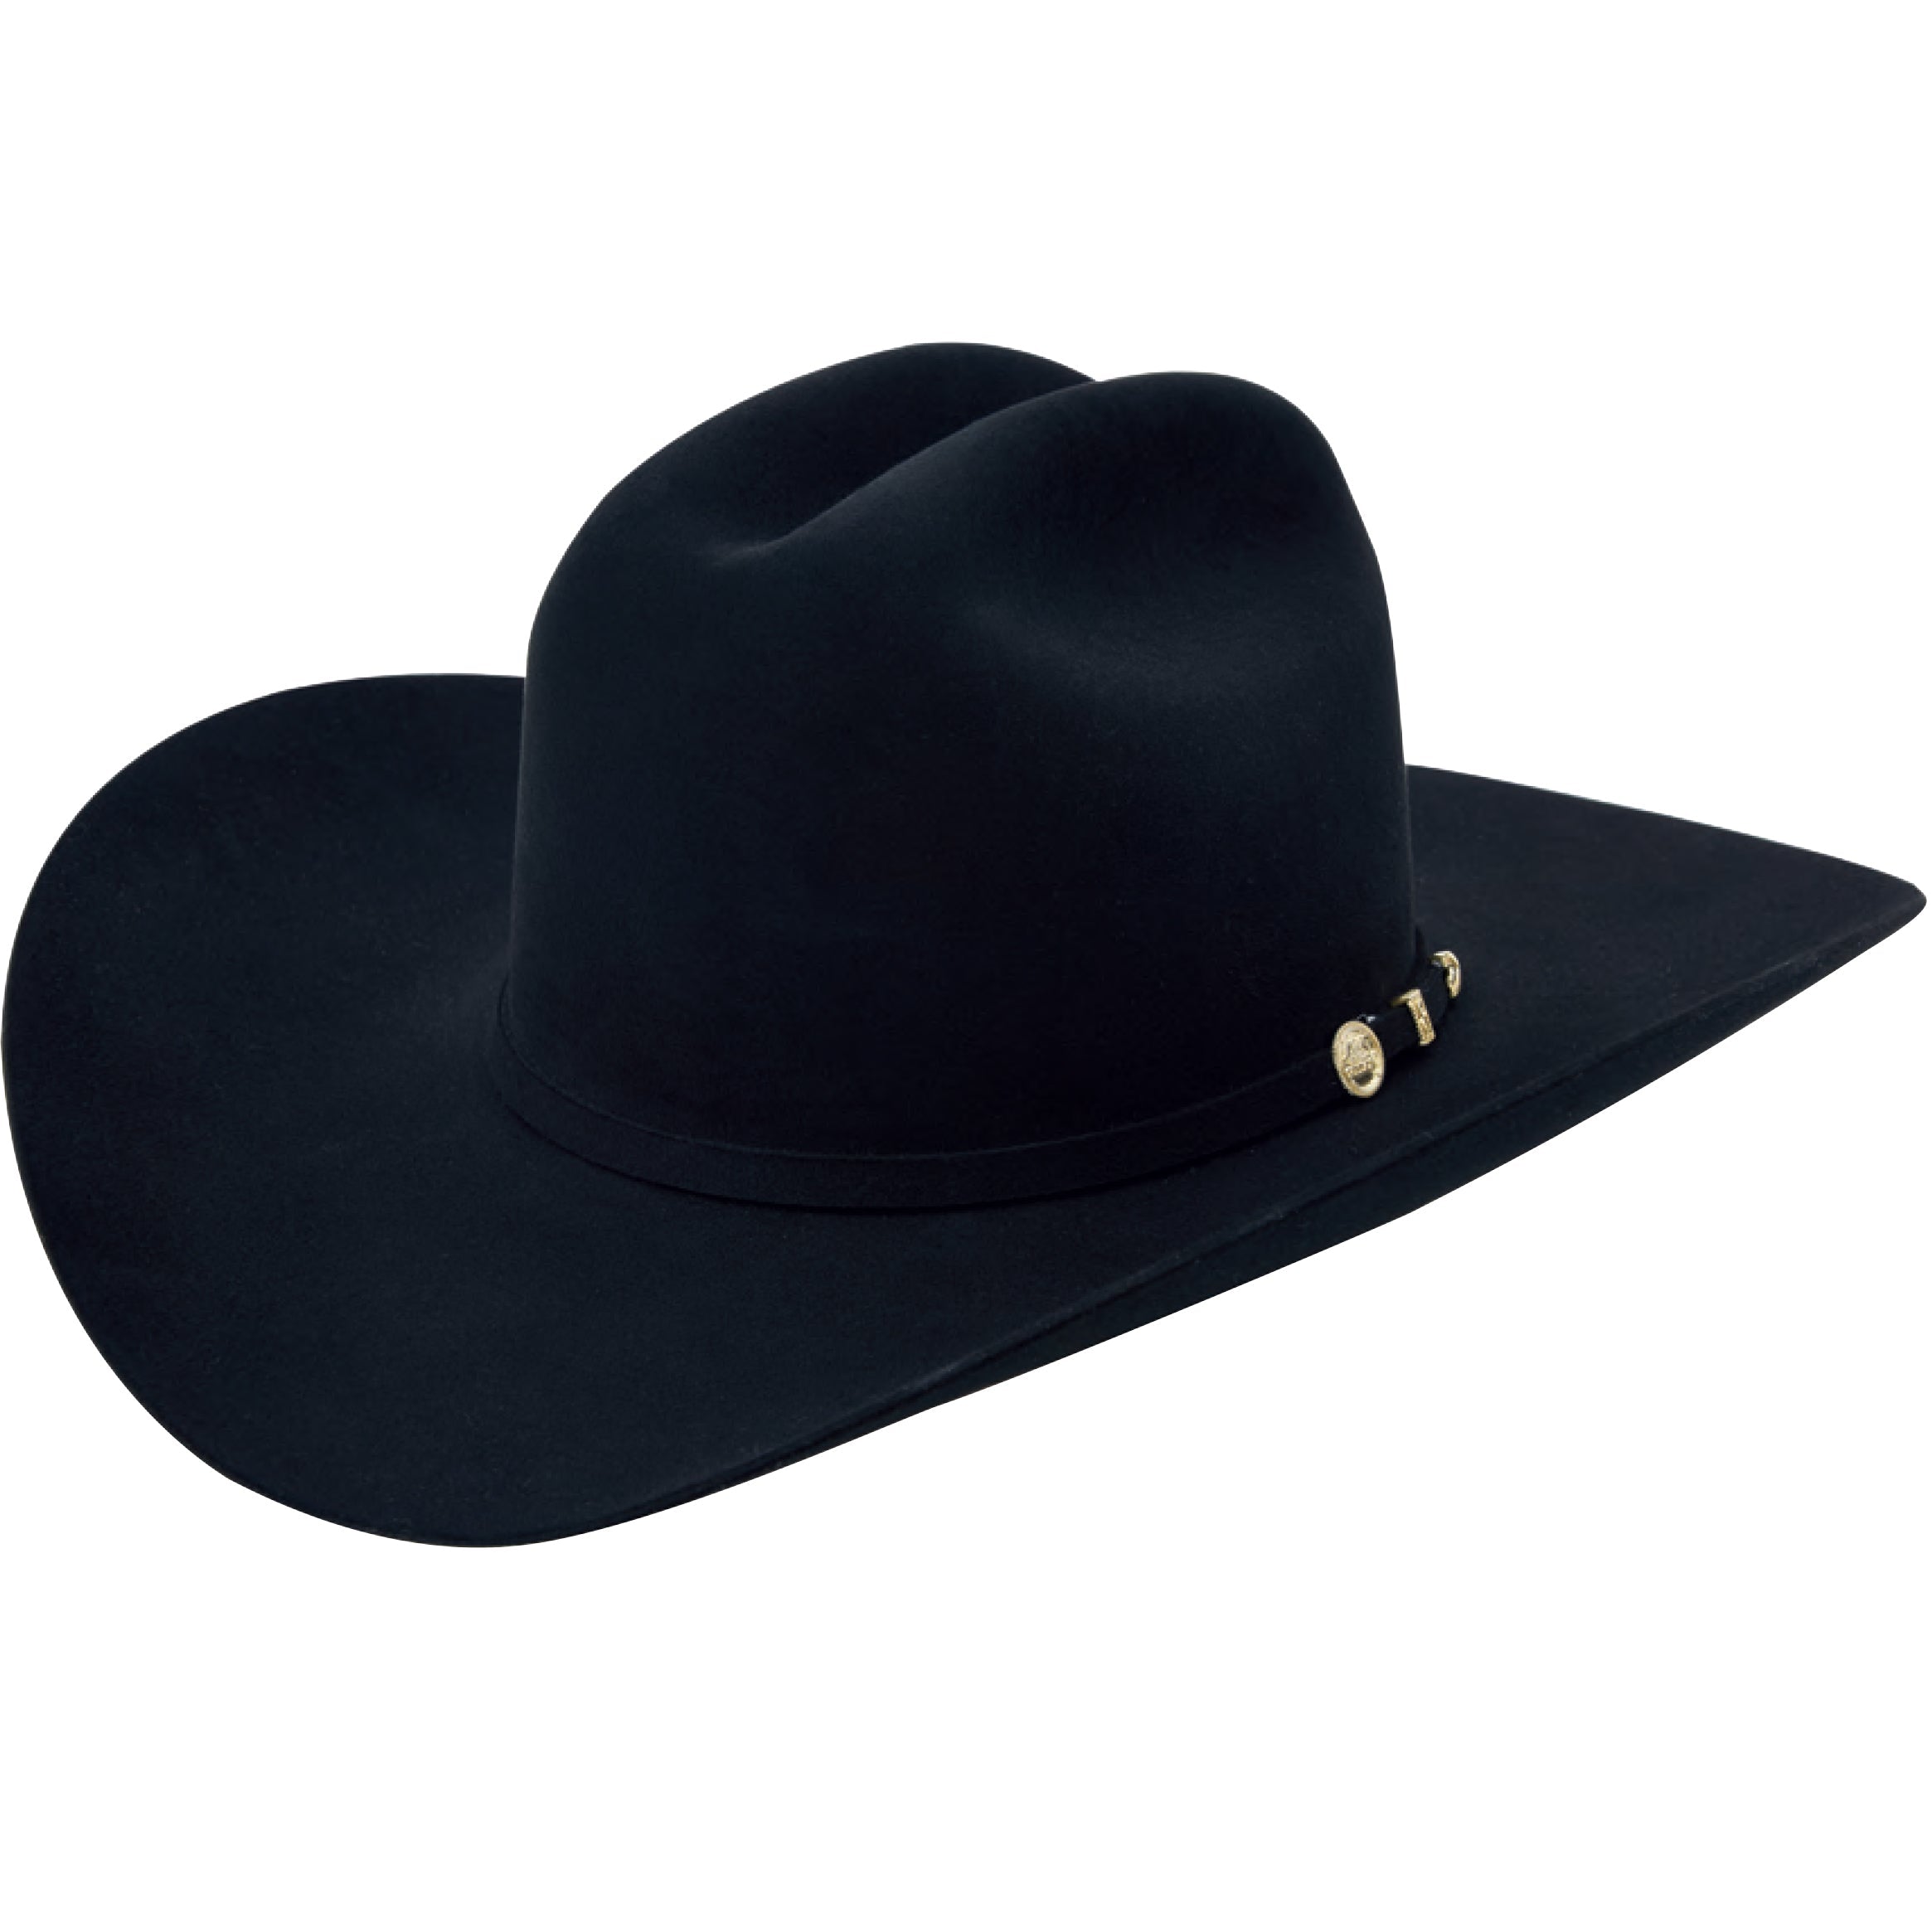 Stetson El Presidente 100x Cowboy Hats